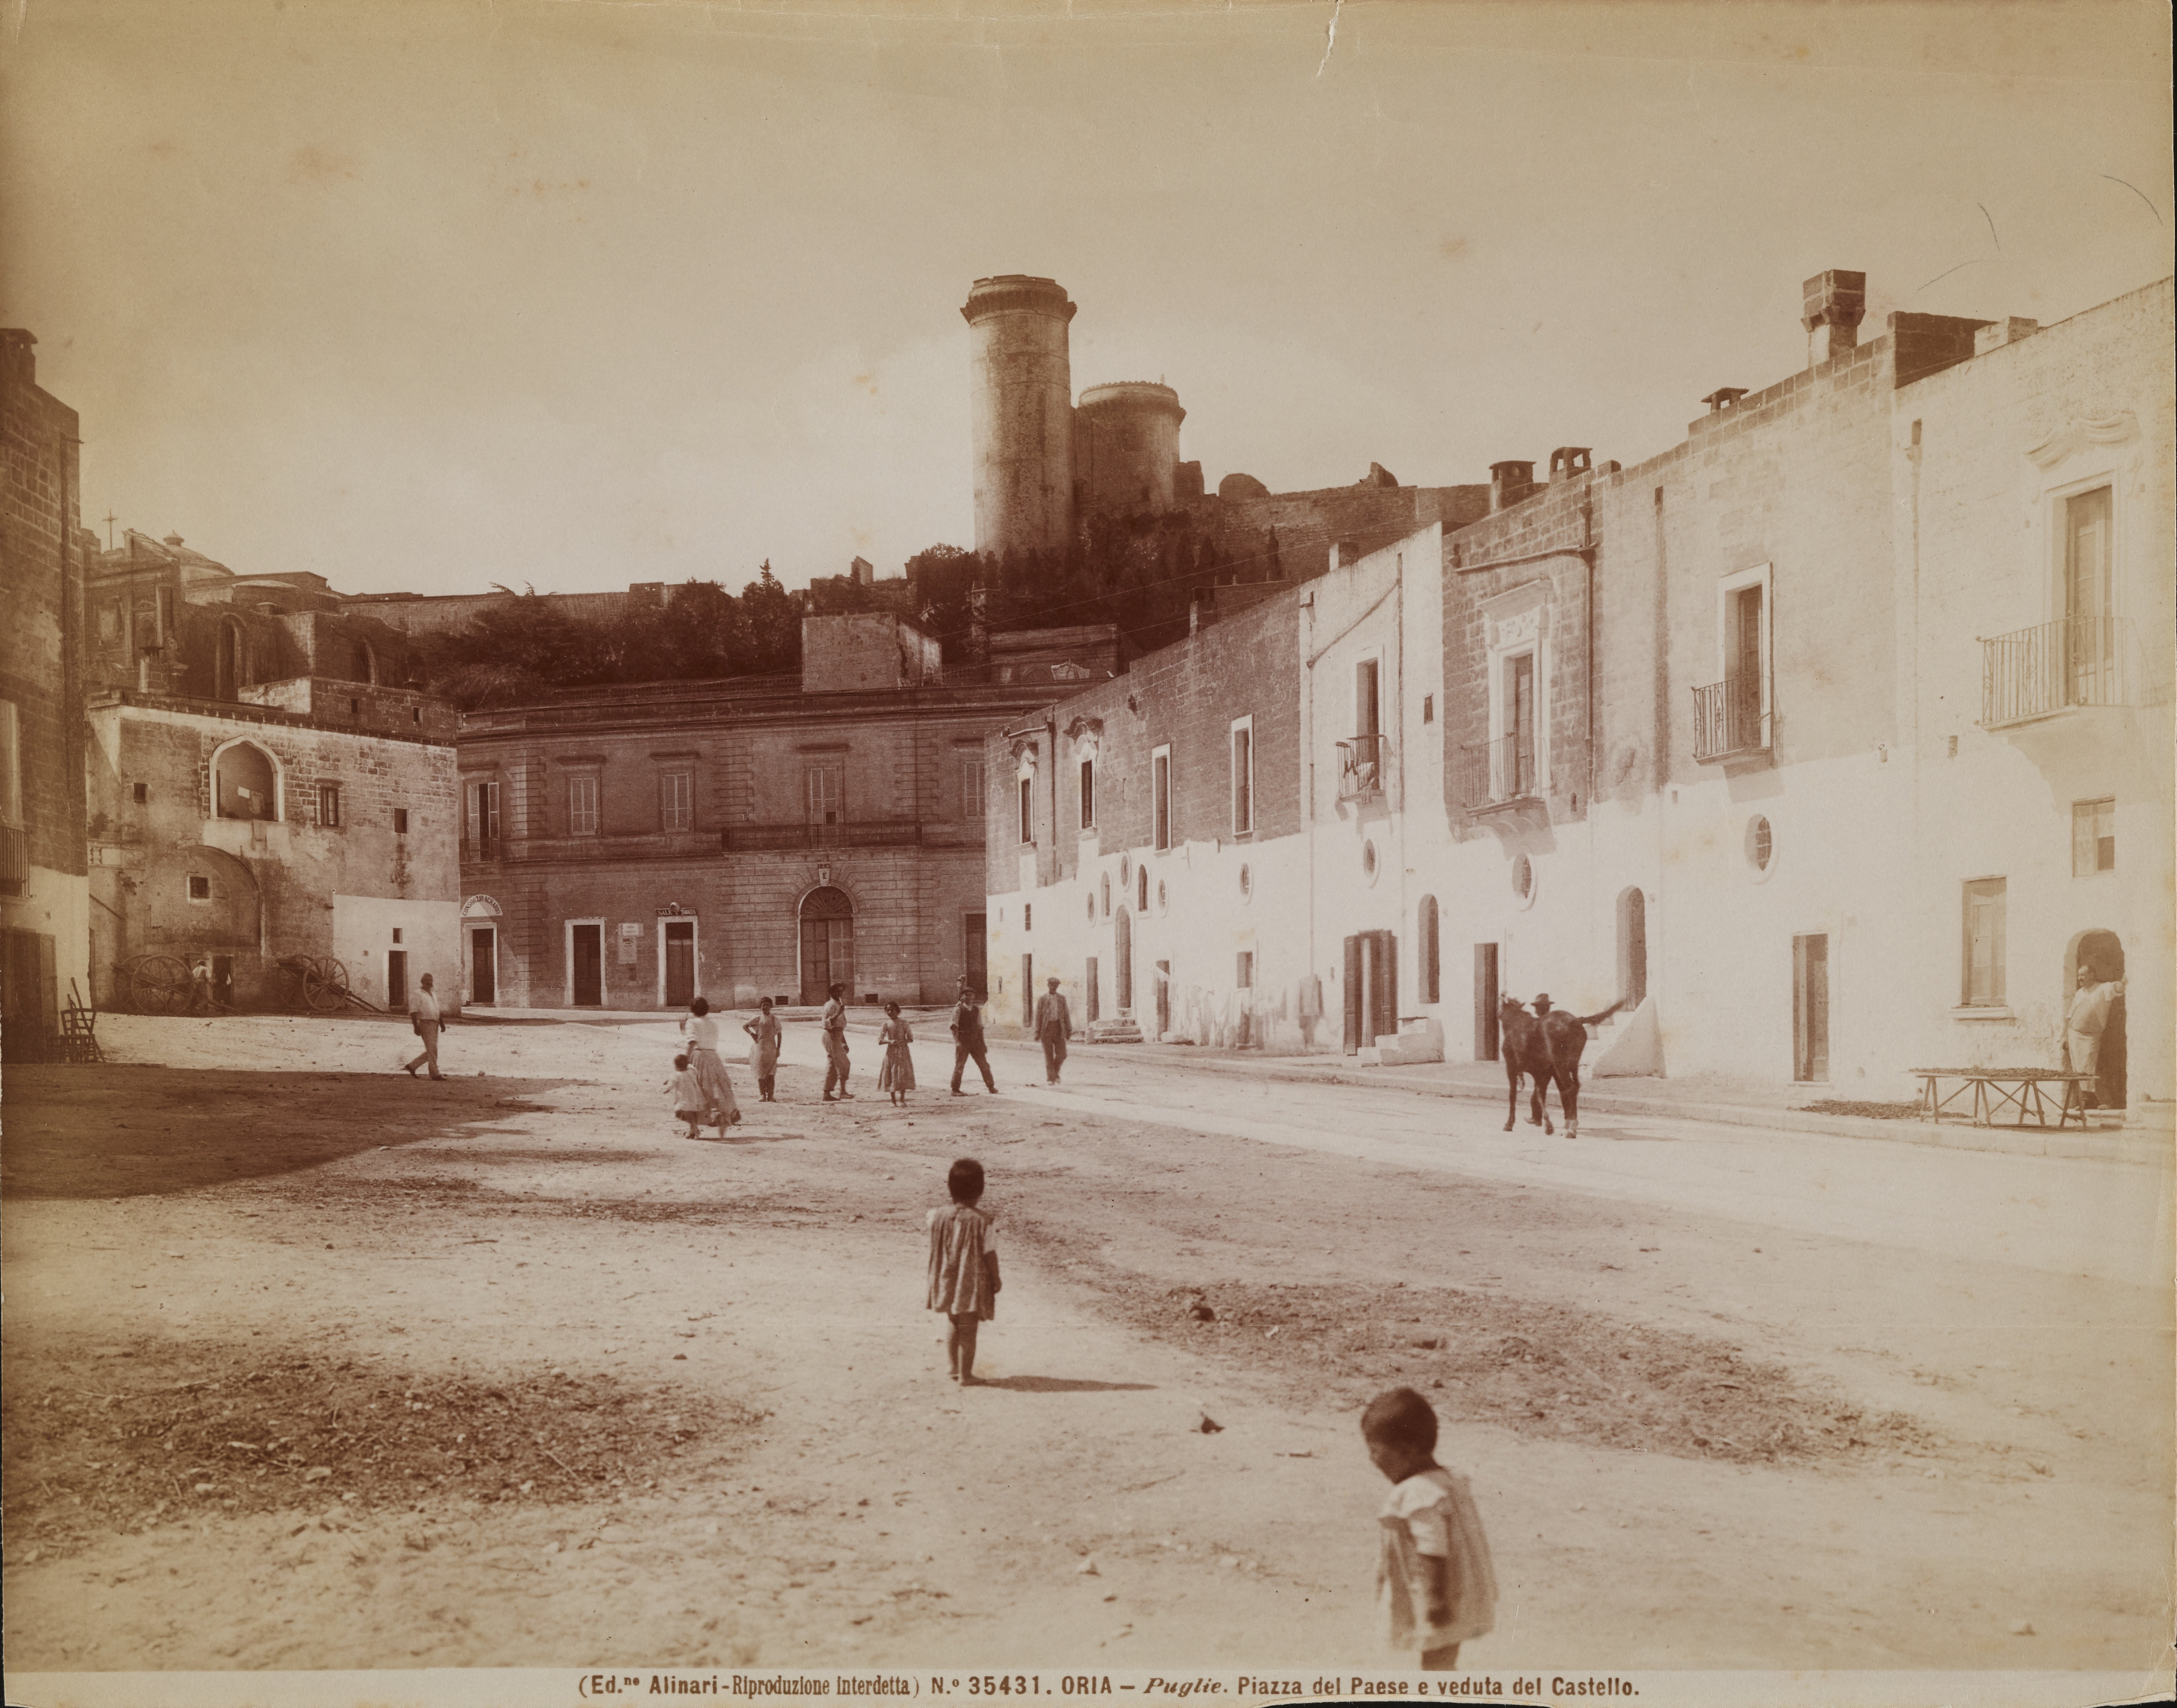 Autore non identificato, Oria - piazza del paese e veduta del Castello, 1876-1900, albumina, MPI6067397